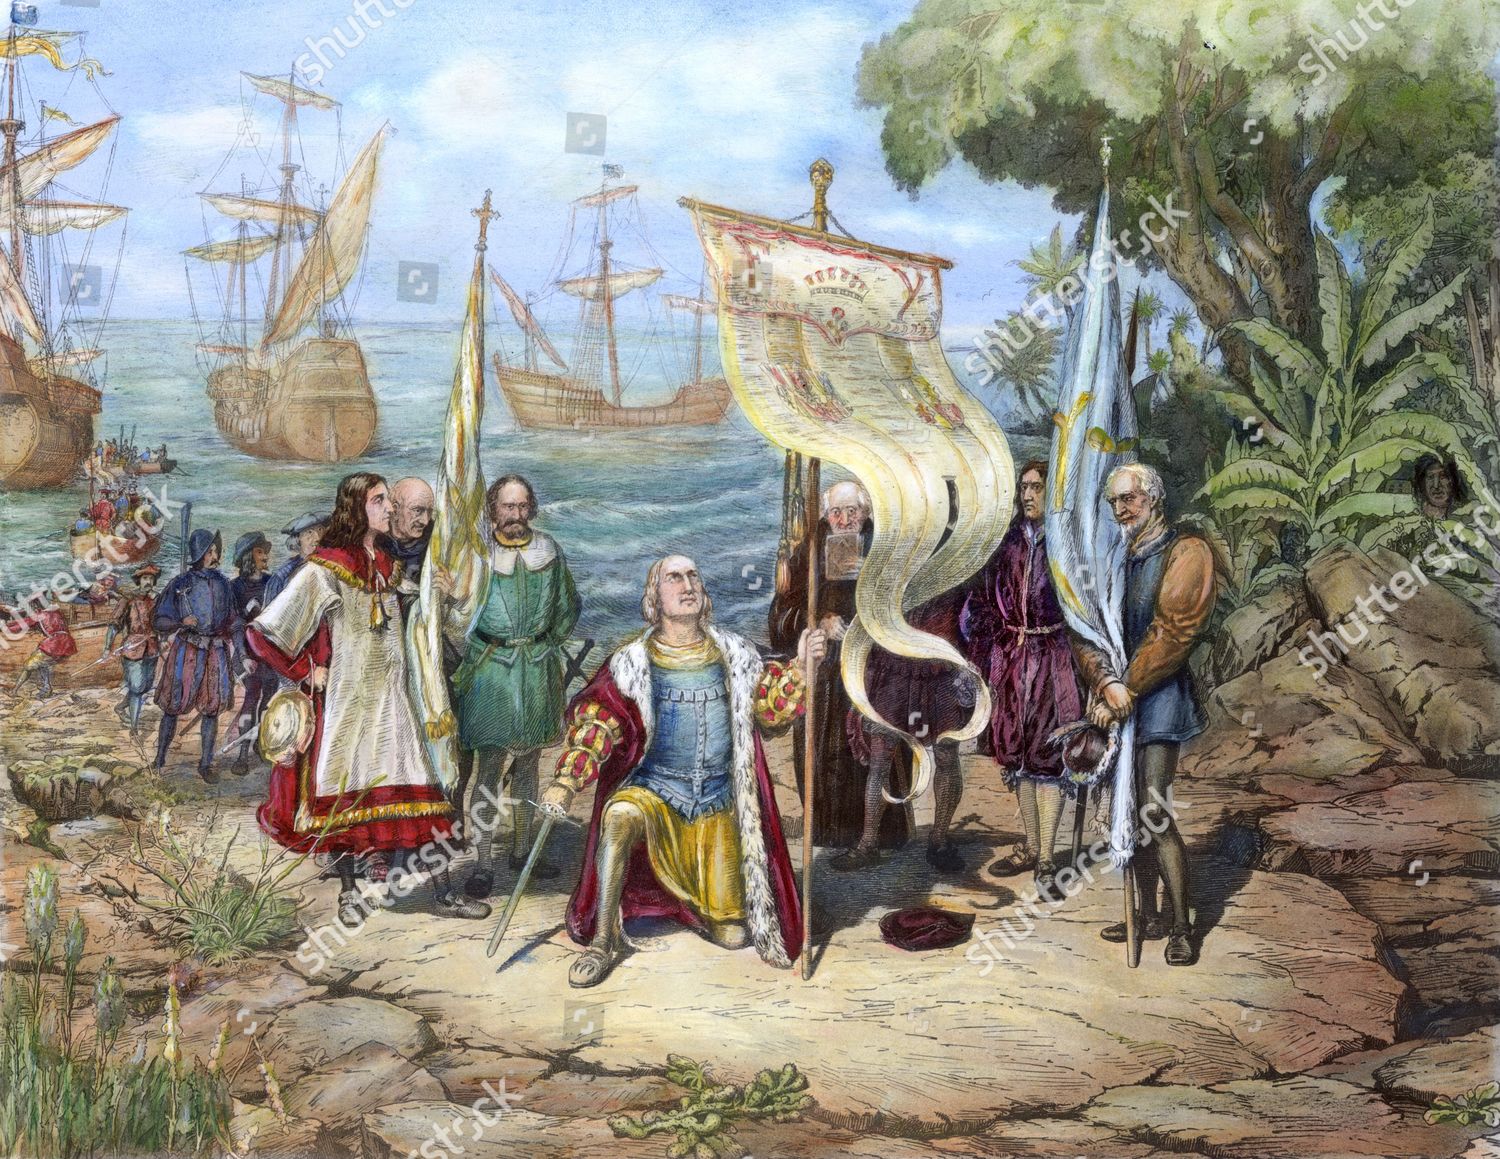 Открытие нового света христофором. Экспедиция Христофора Колумба достигла острова Сан-Сальвадор.